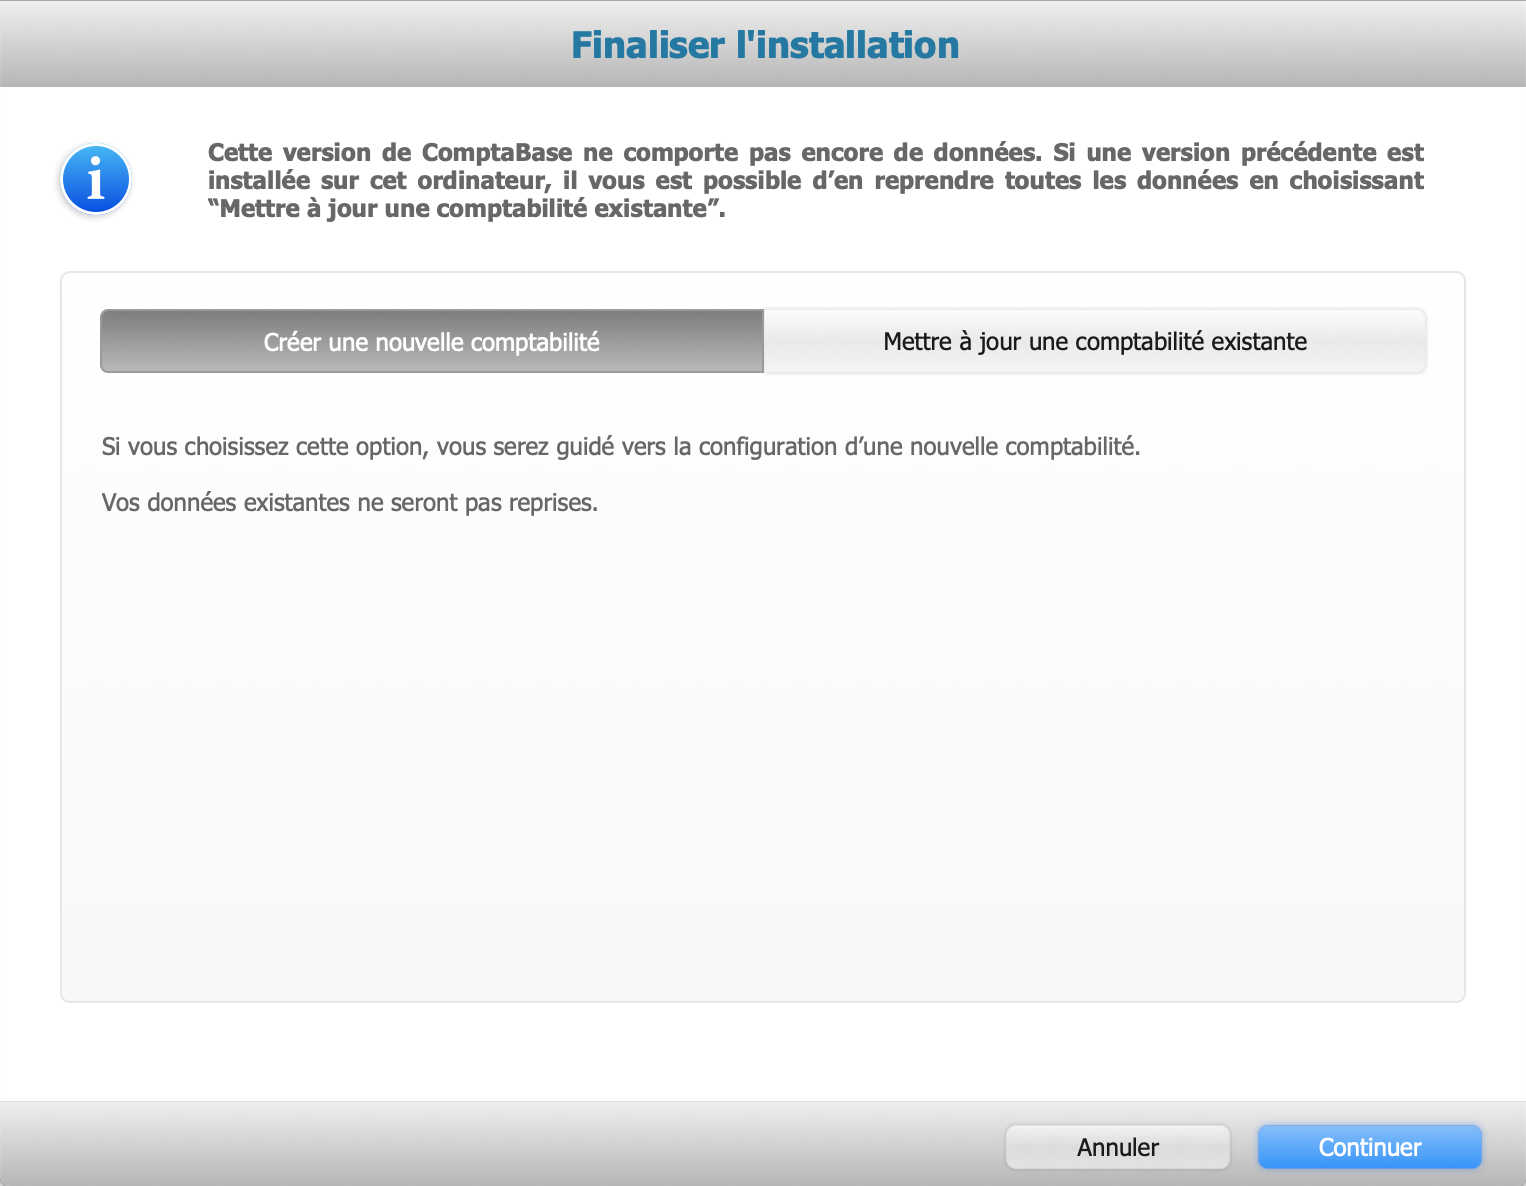 scr_finaliser_installation